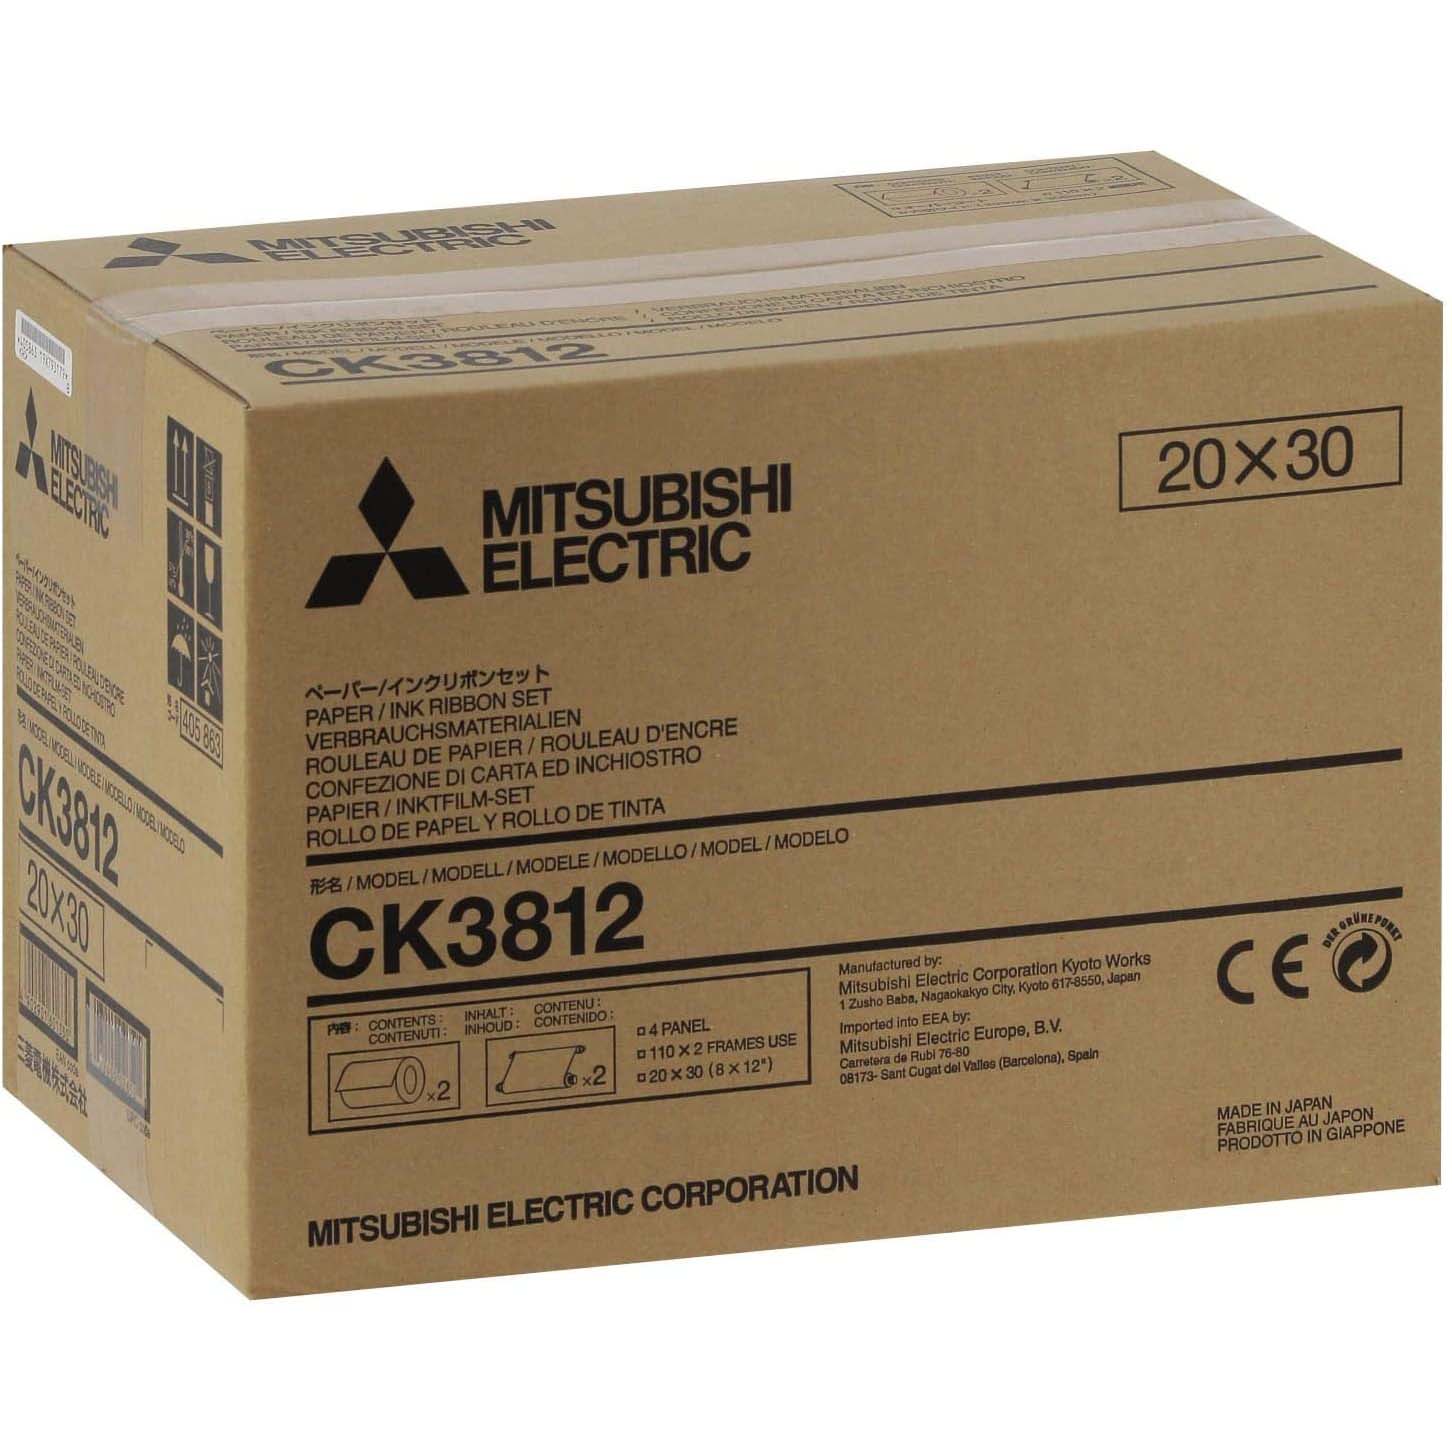 KIT DE IMPRESION MITSUBISHI CK-3812 (220 COPIAS 20X30)